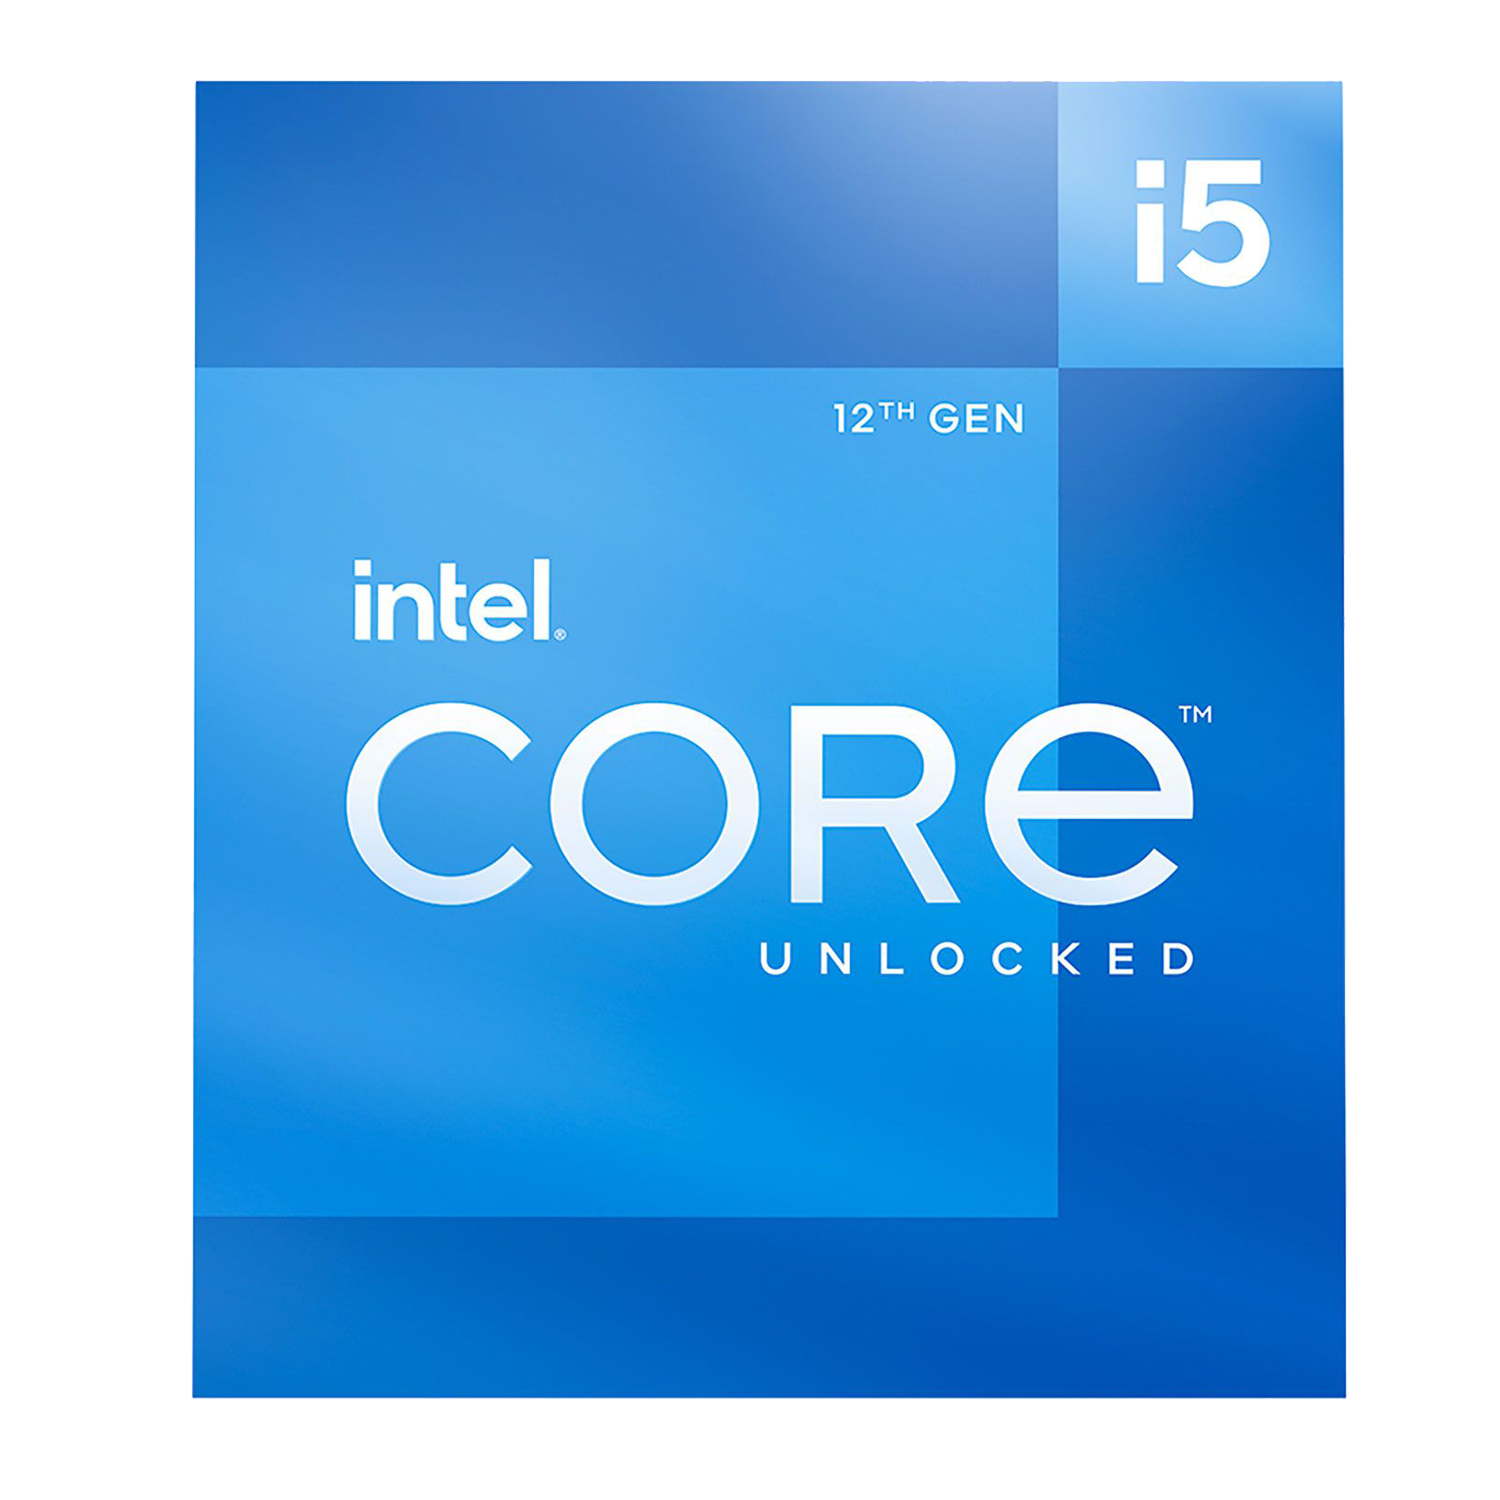 12th Gen Intel Core i5-12600K Desktop Processor